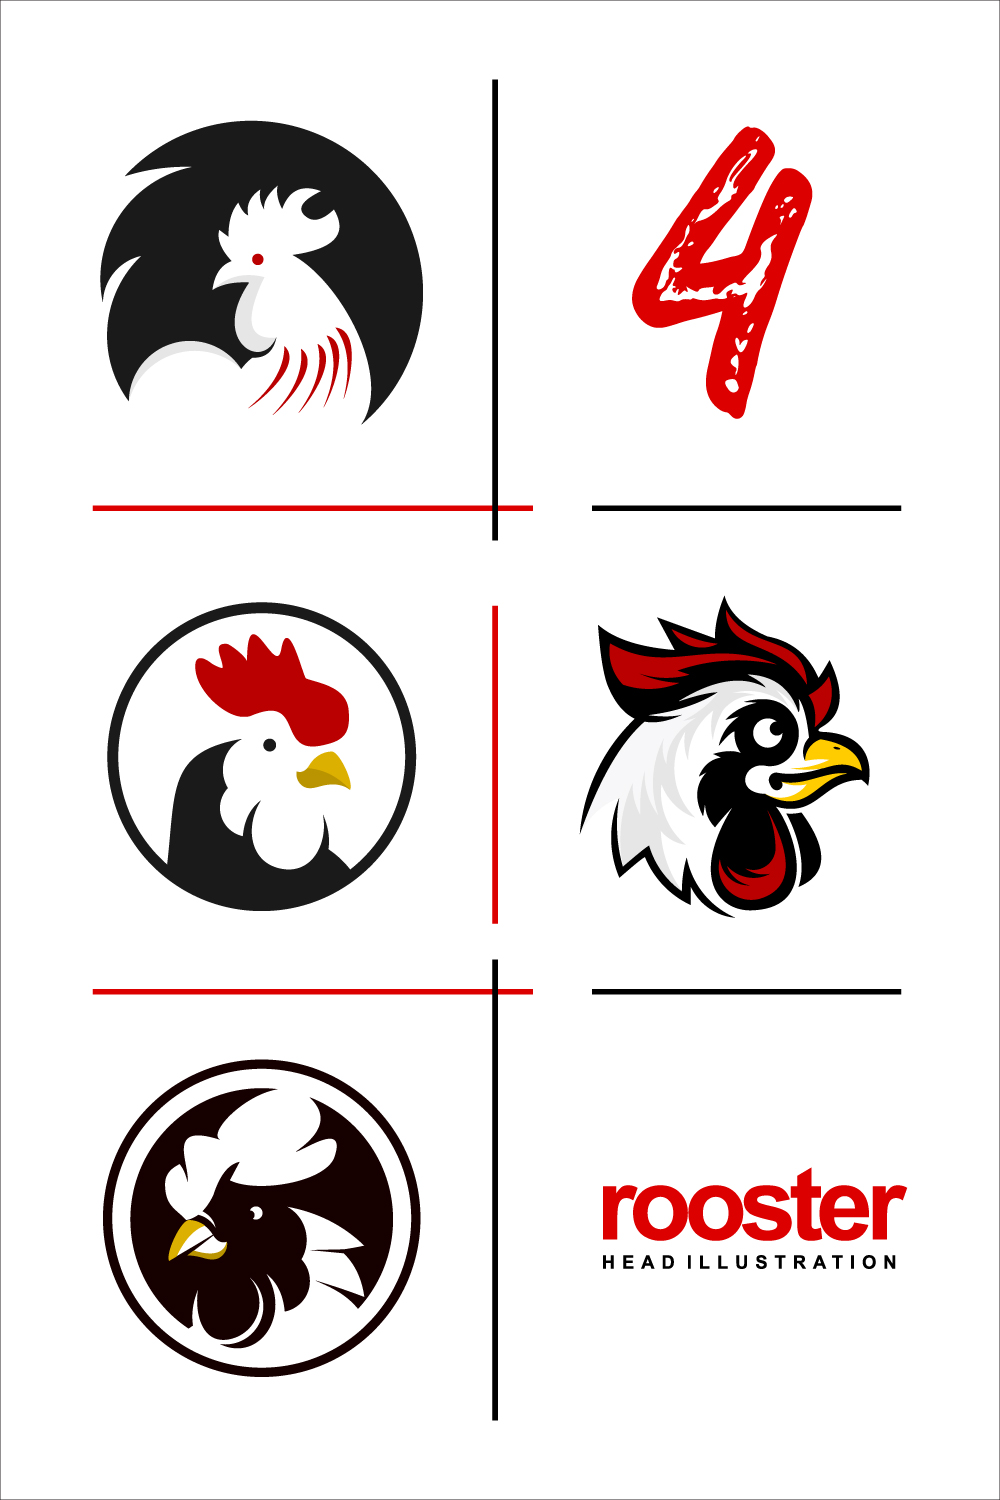 Rooster Head Illustration Design pinterest image.